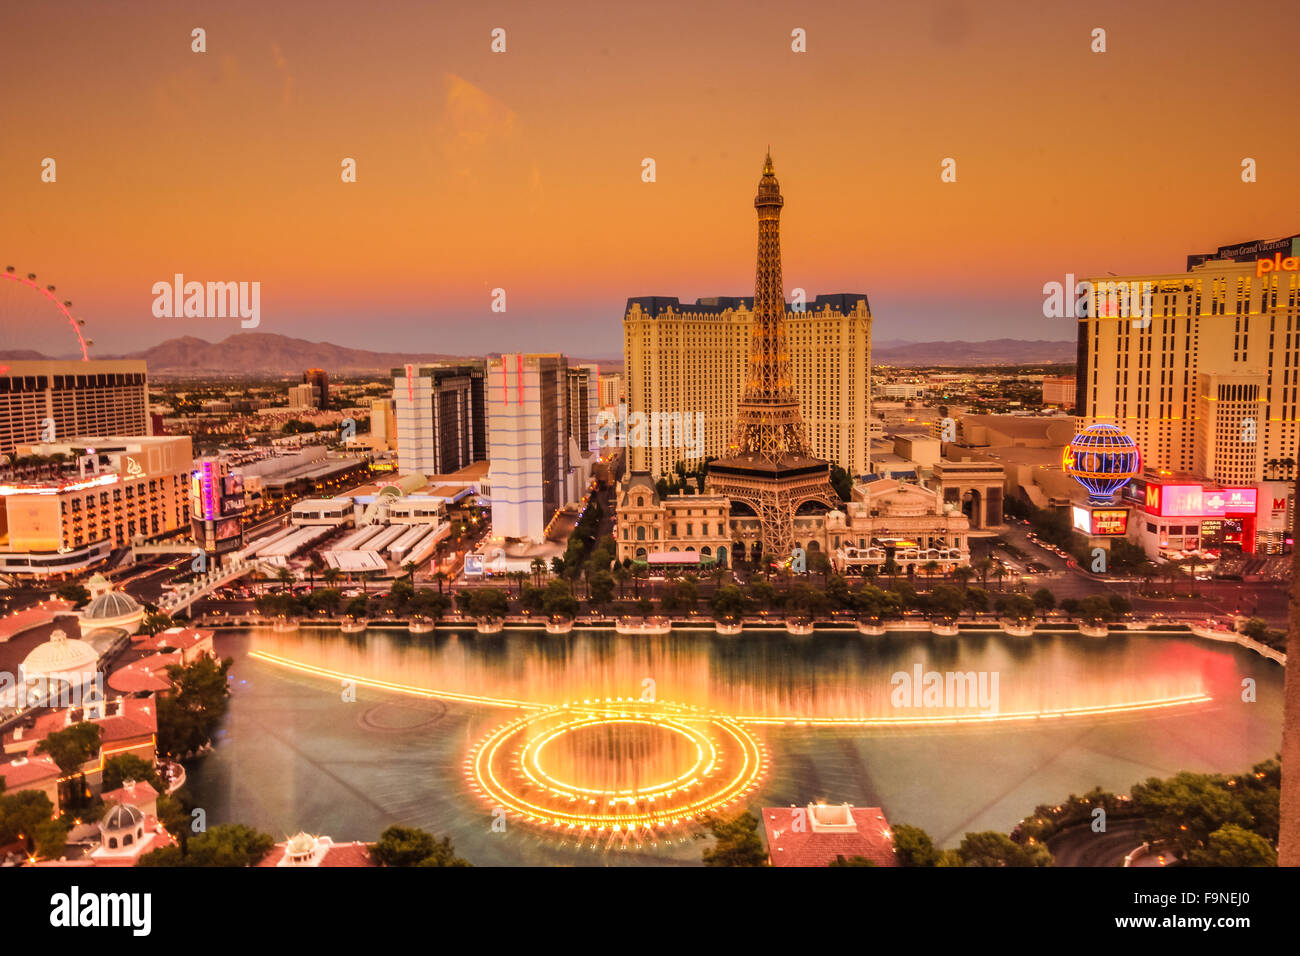 Vue panoramique de luxueux hôtels et casinos à Las Vegas, Nevada au coucher du soleil Banque D'Images